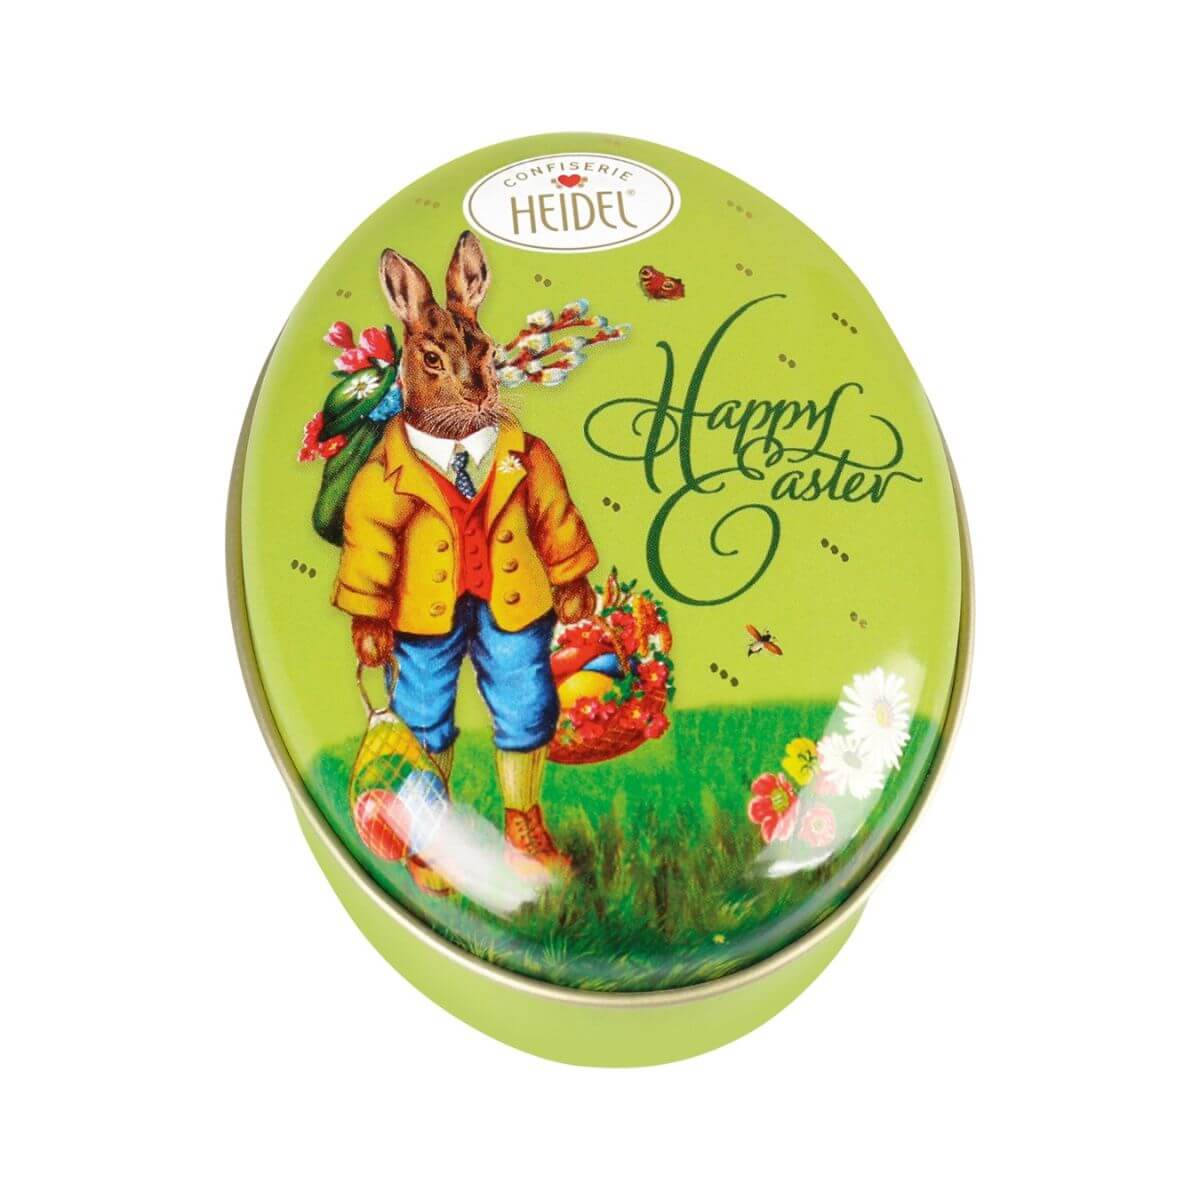 Heidel Easter Nostalgia Praline Chocolates Boy Bunny Tin